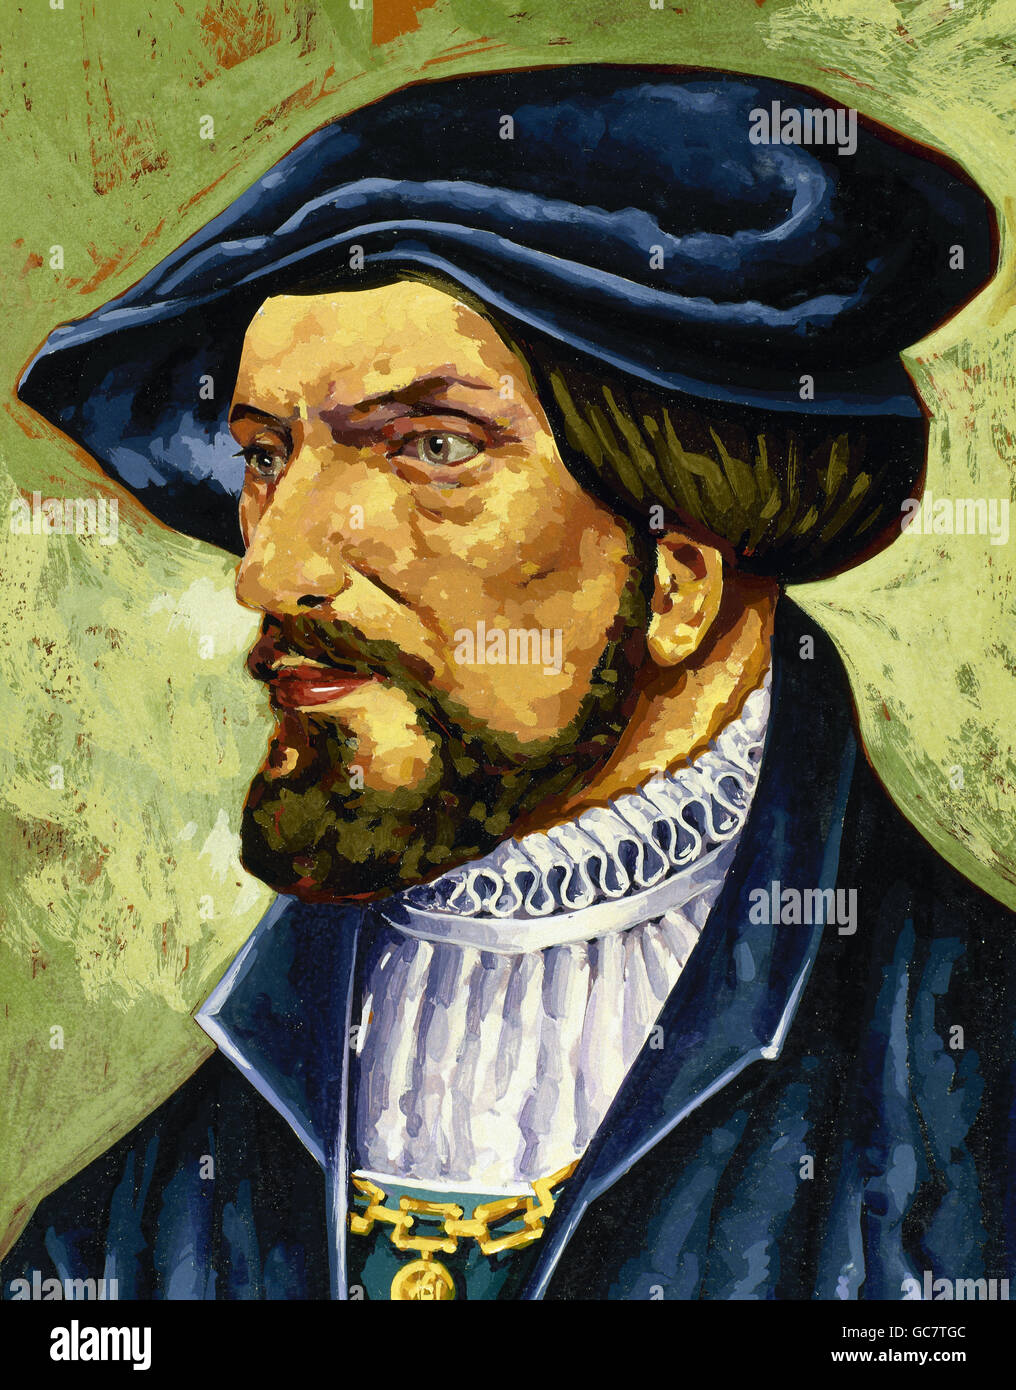 Rodrigo de Bastidas (1445-1527). Spanische Seefahrer und Eroberer. Aquarell. Stockfoto